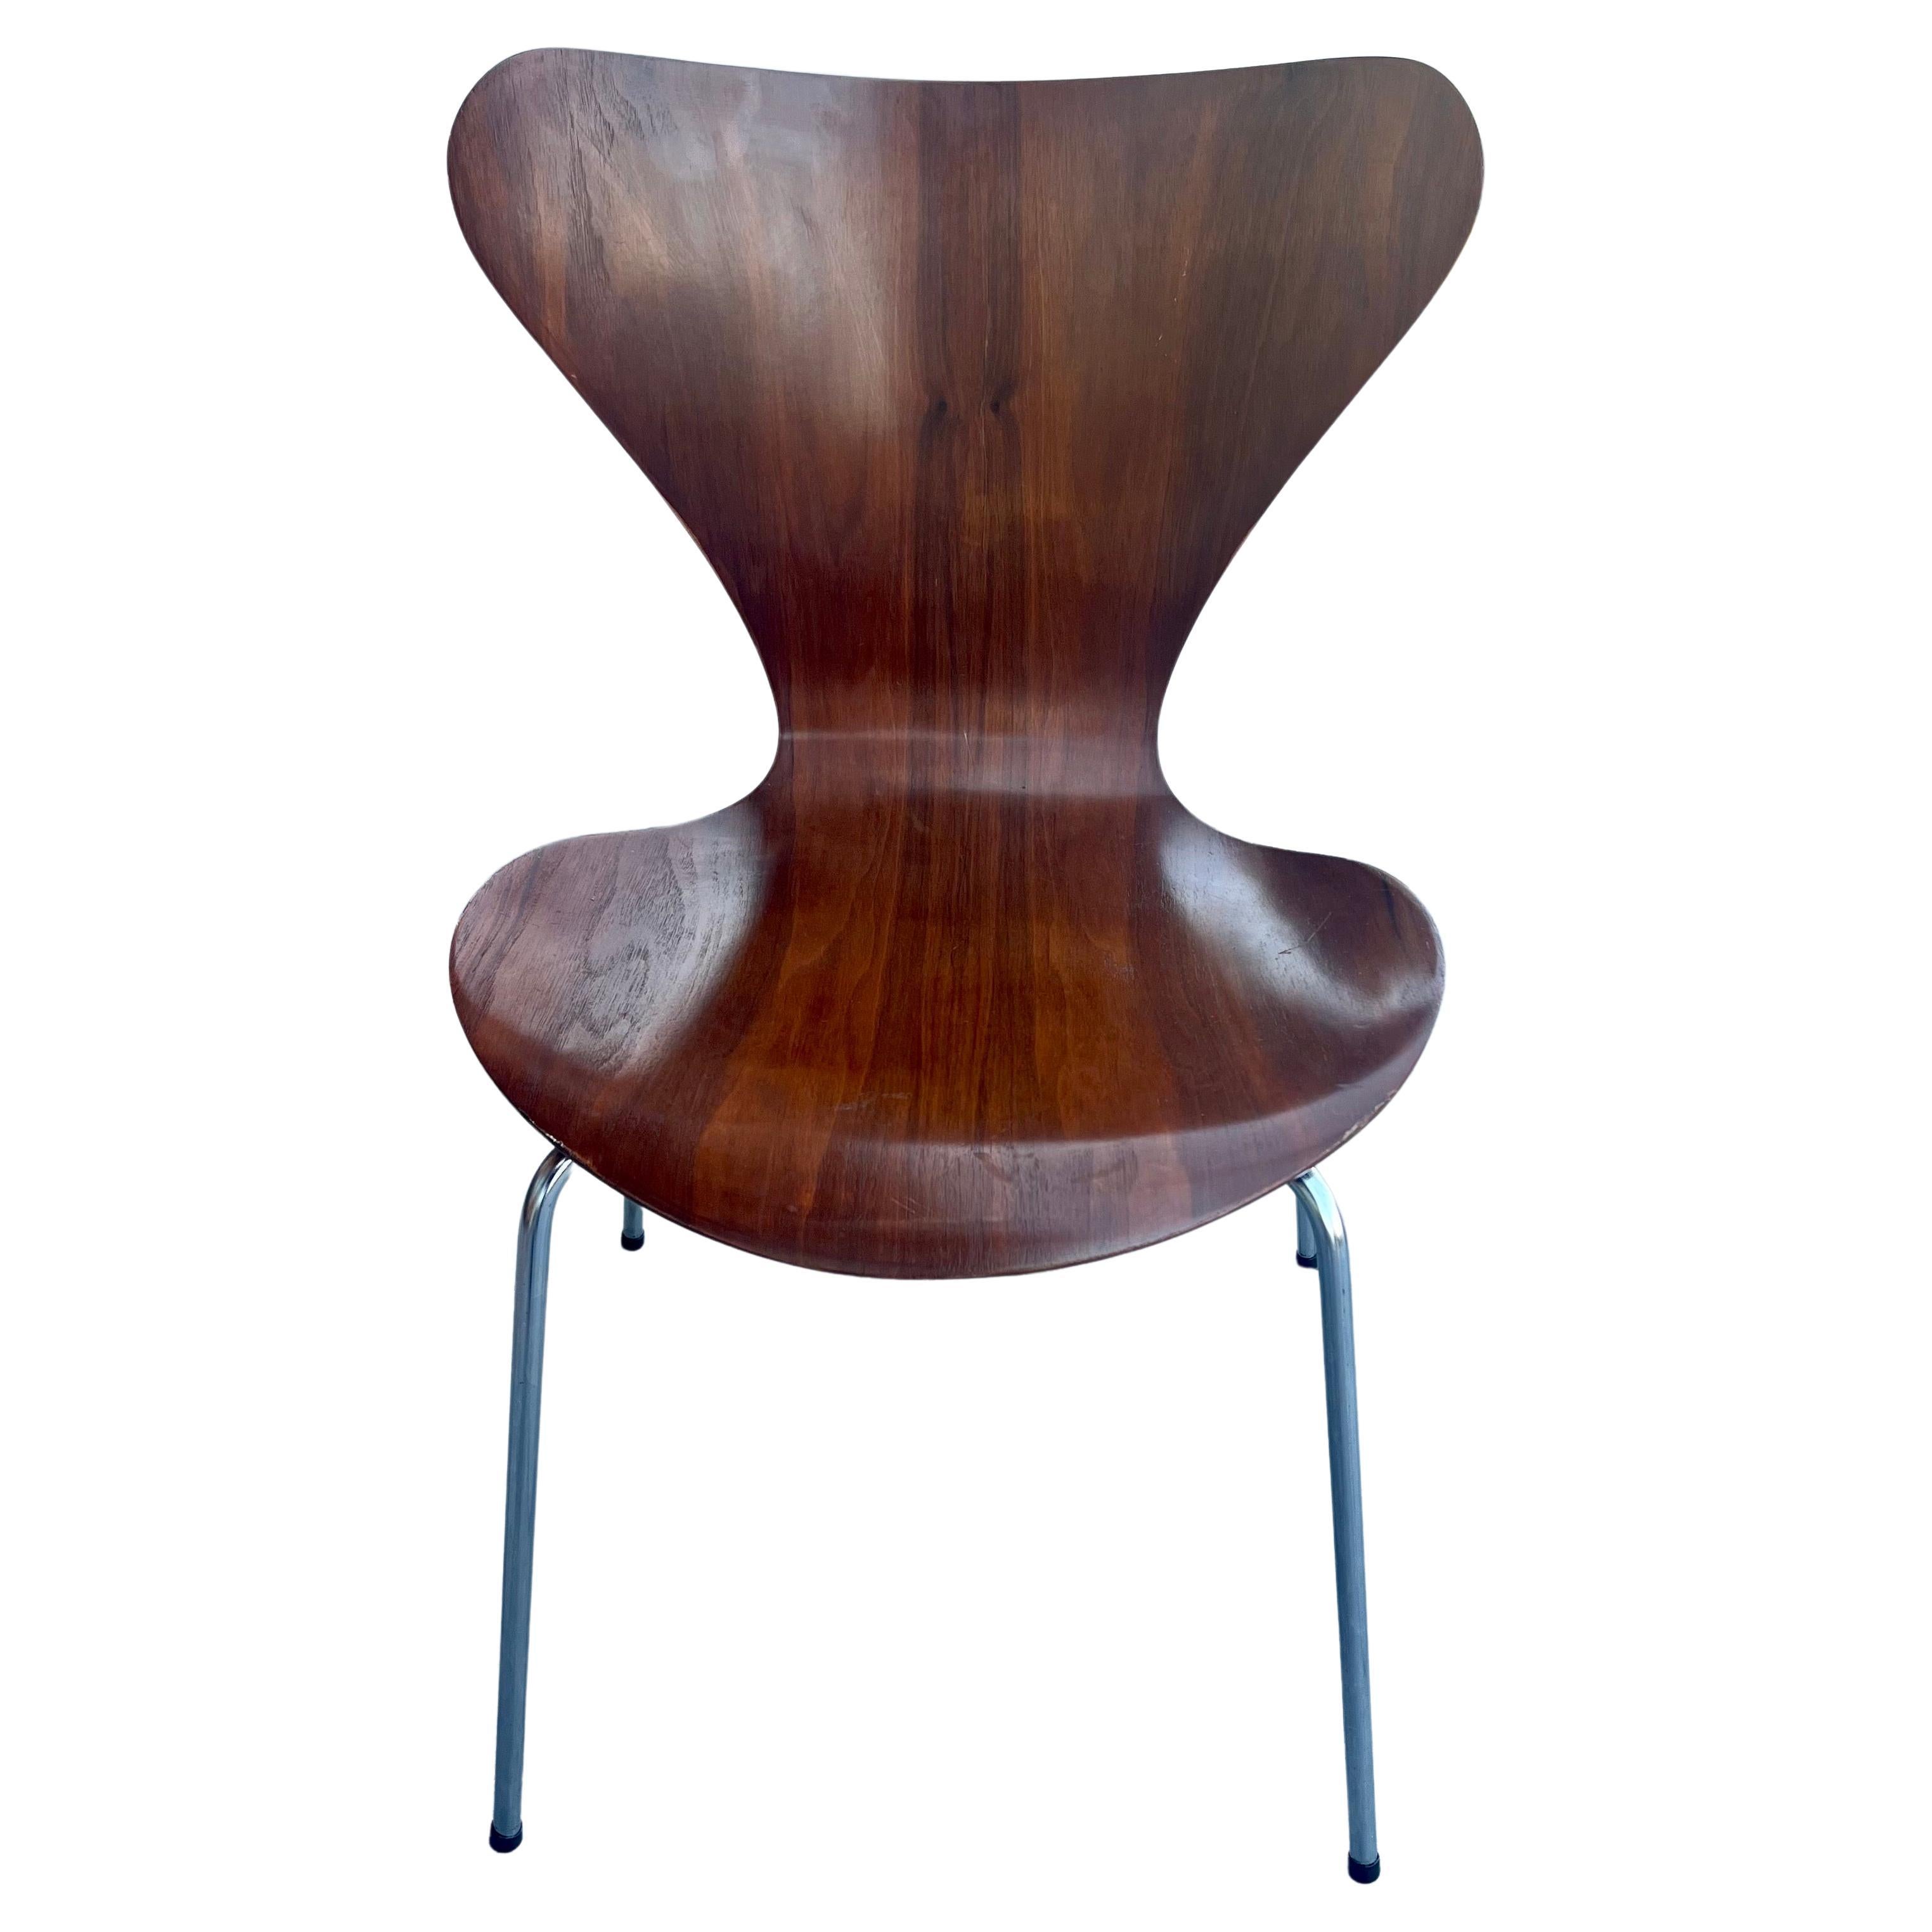 20th Century Danish Modern Series 7 Chair by Arne Jacobsen Dark Teak Fritz Hansen For Sale